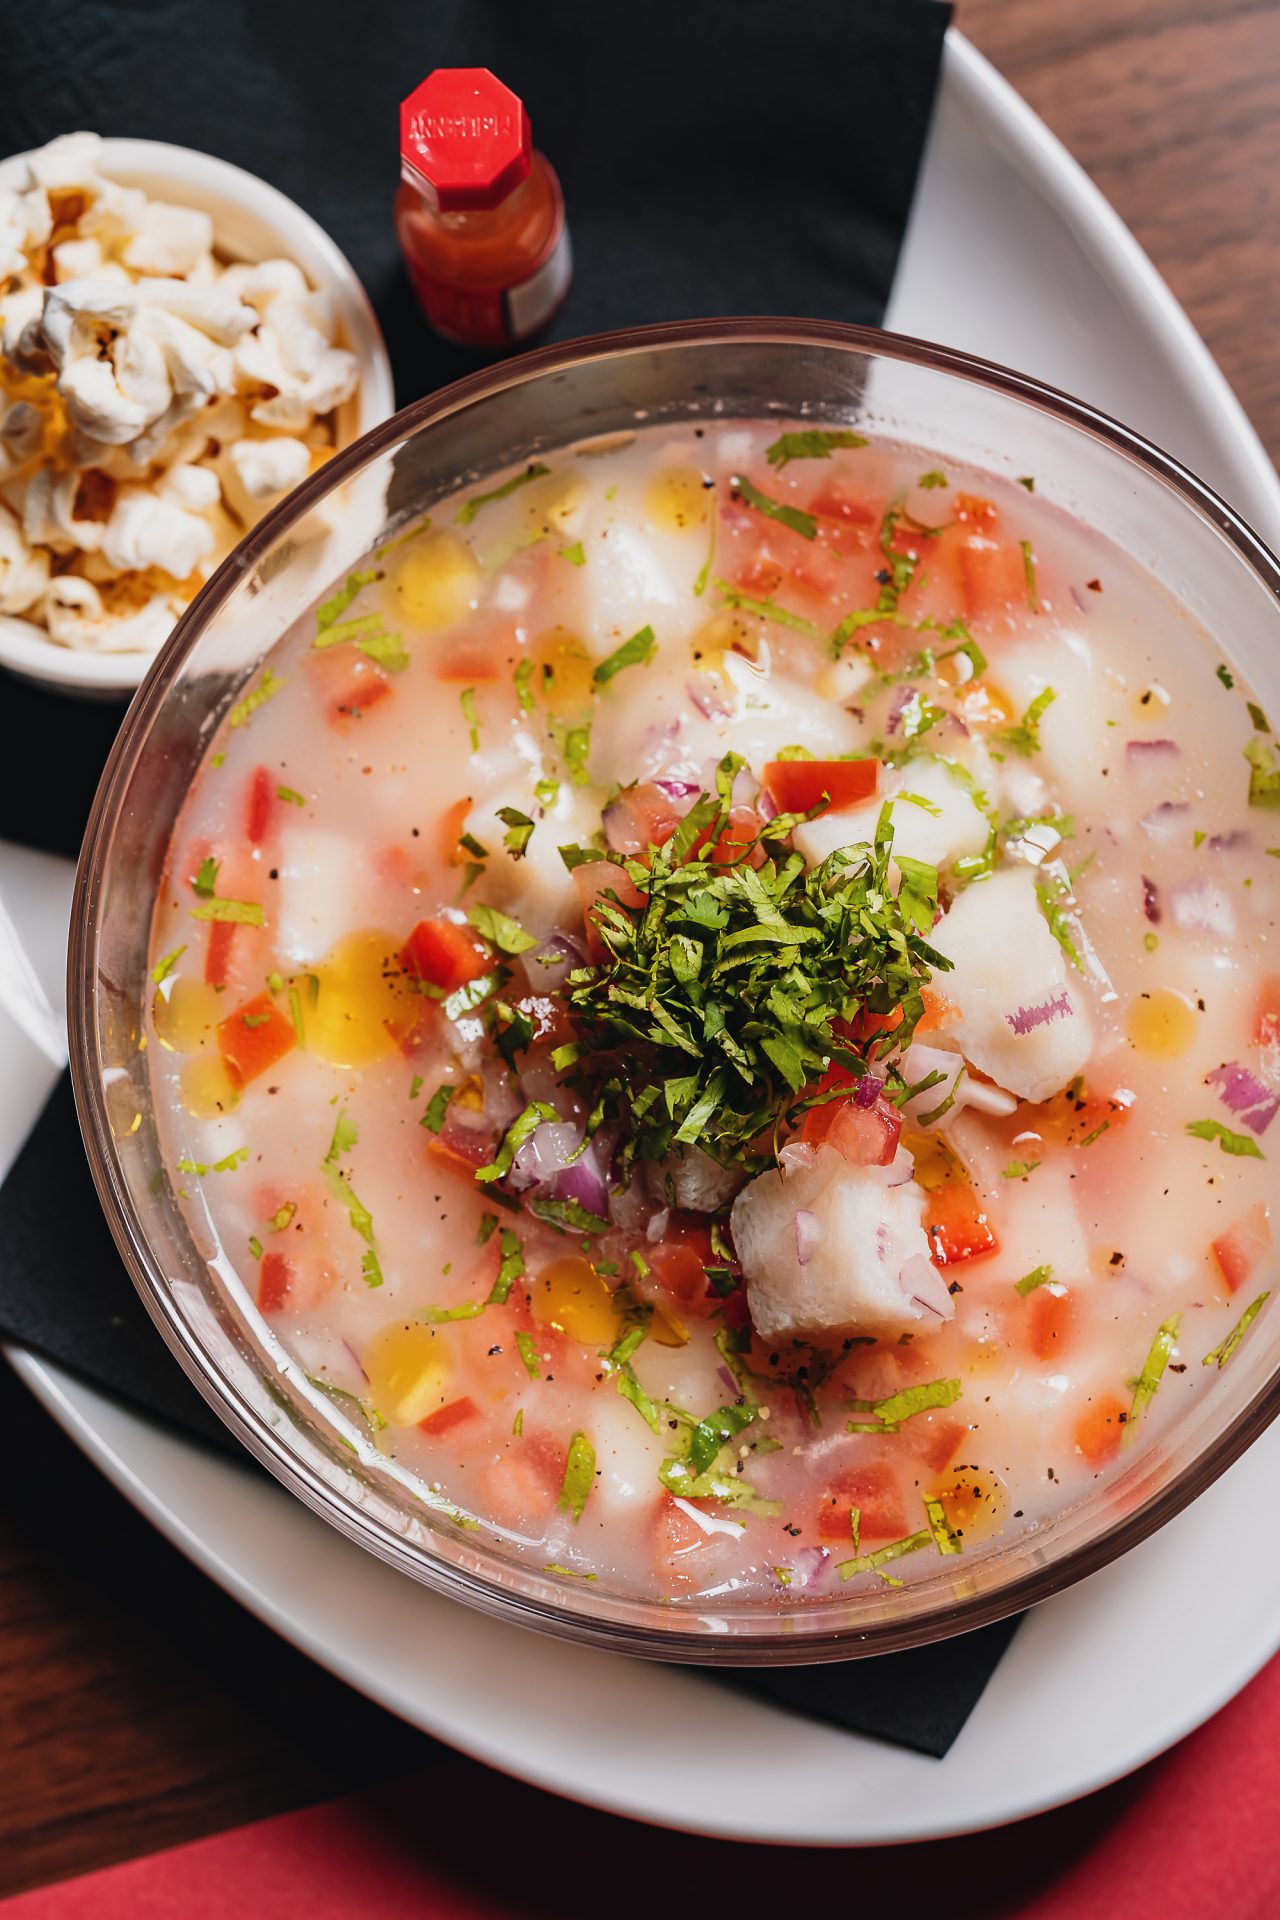 طبق سيفيتشي البحري المكون من سمك القد متبل بالليمون والبصل والفلفل الأحمر والكزبرة في مطعم فيردي